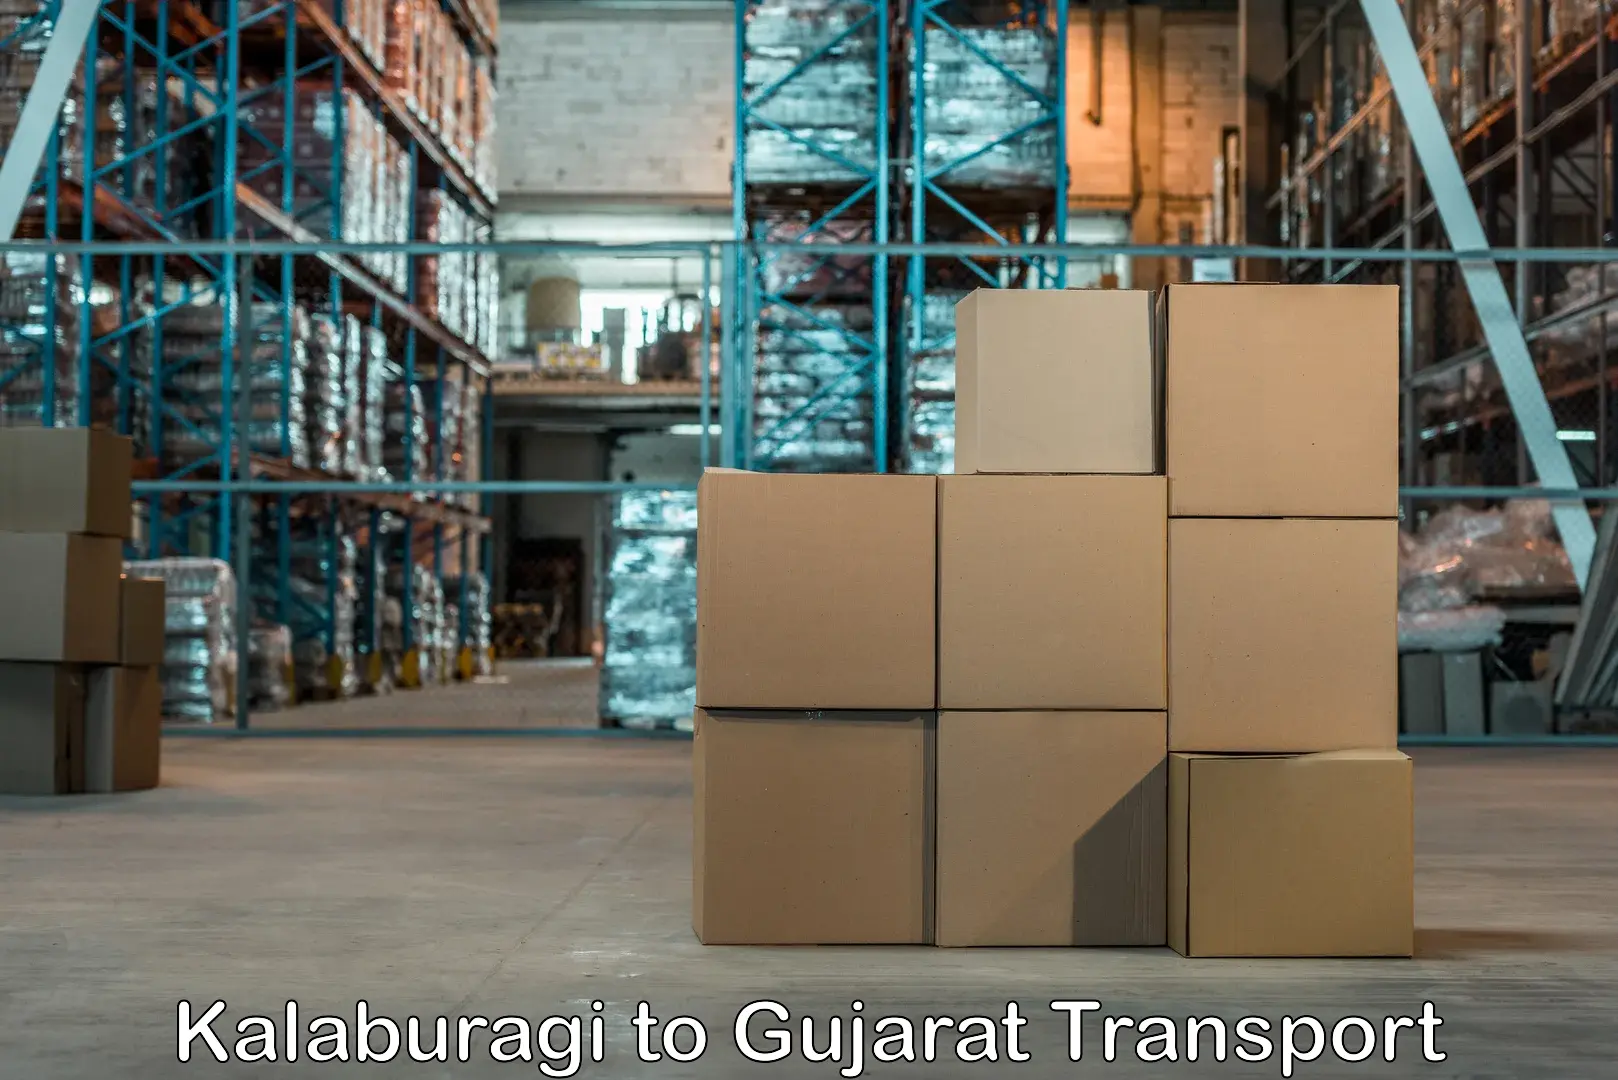 Sending bike to another city Kalaburagi to Gujarat